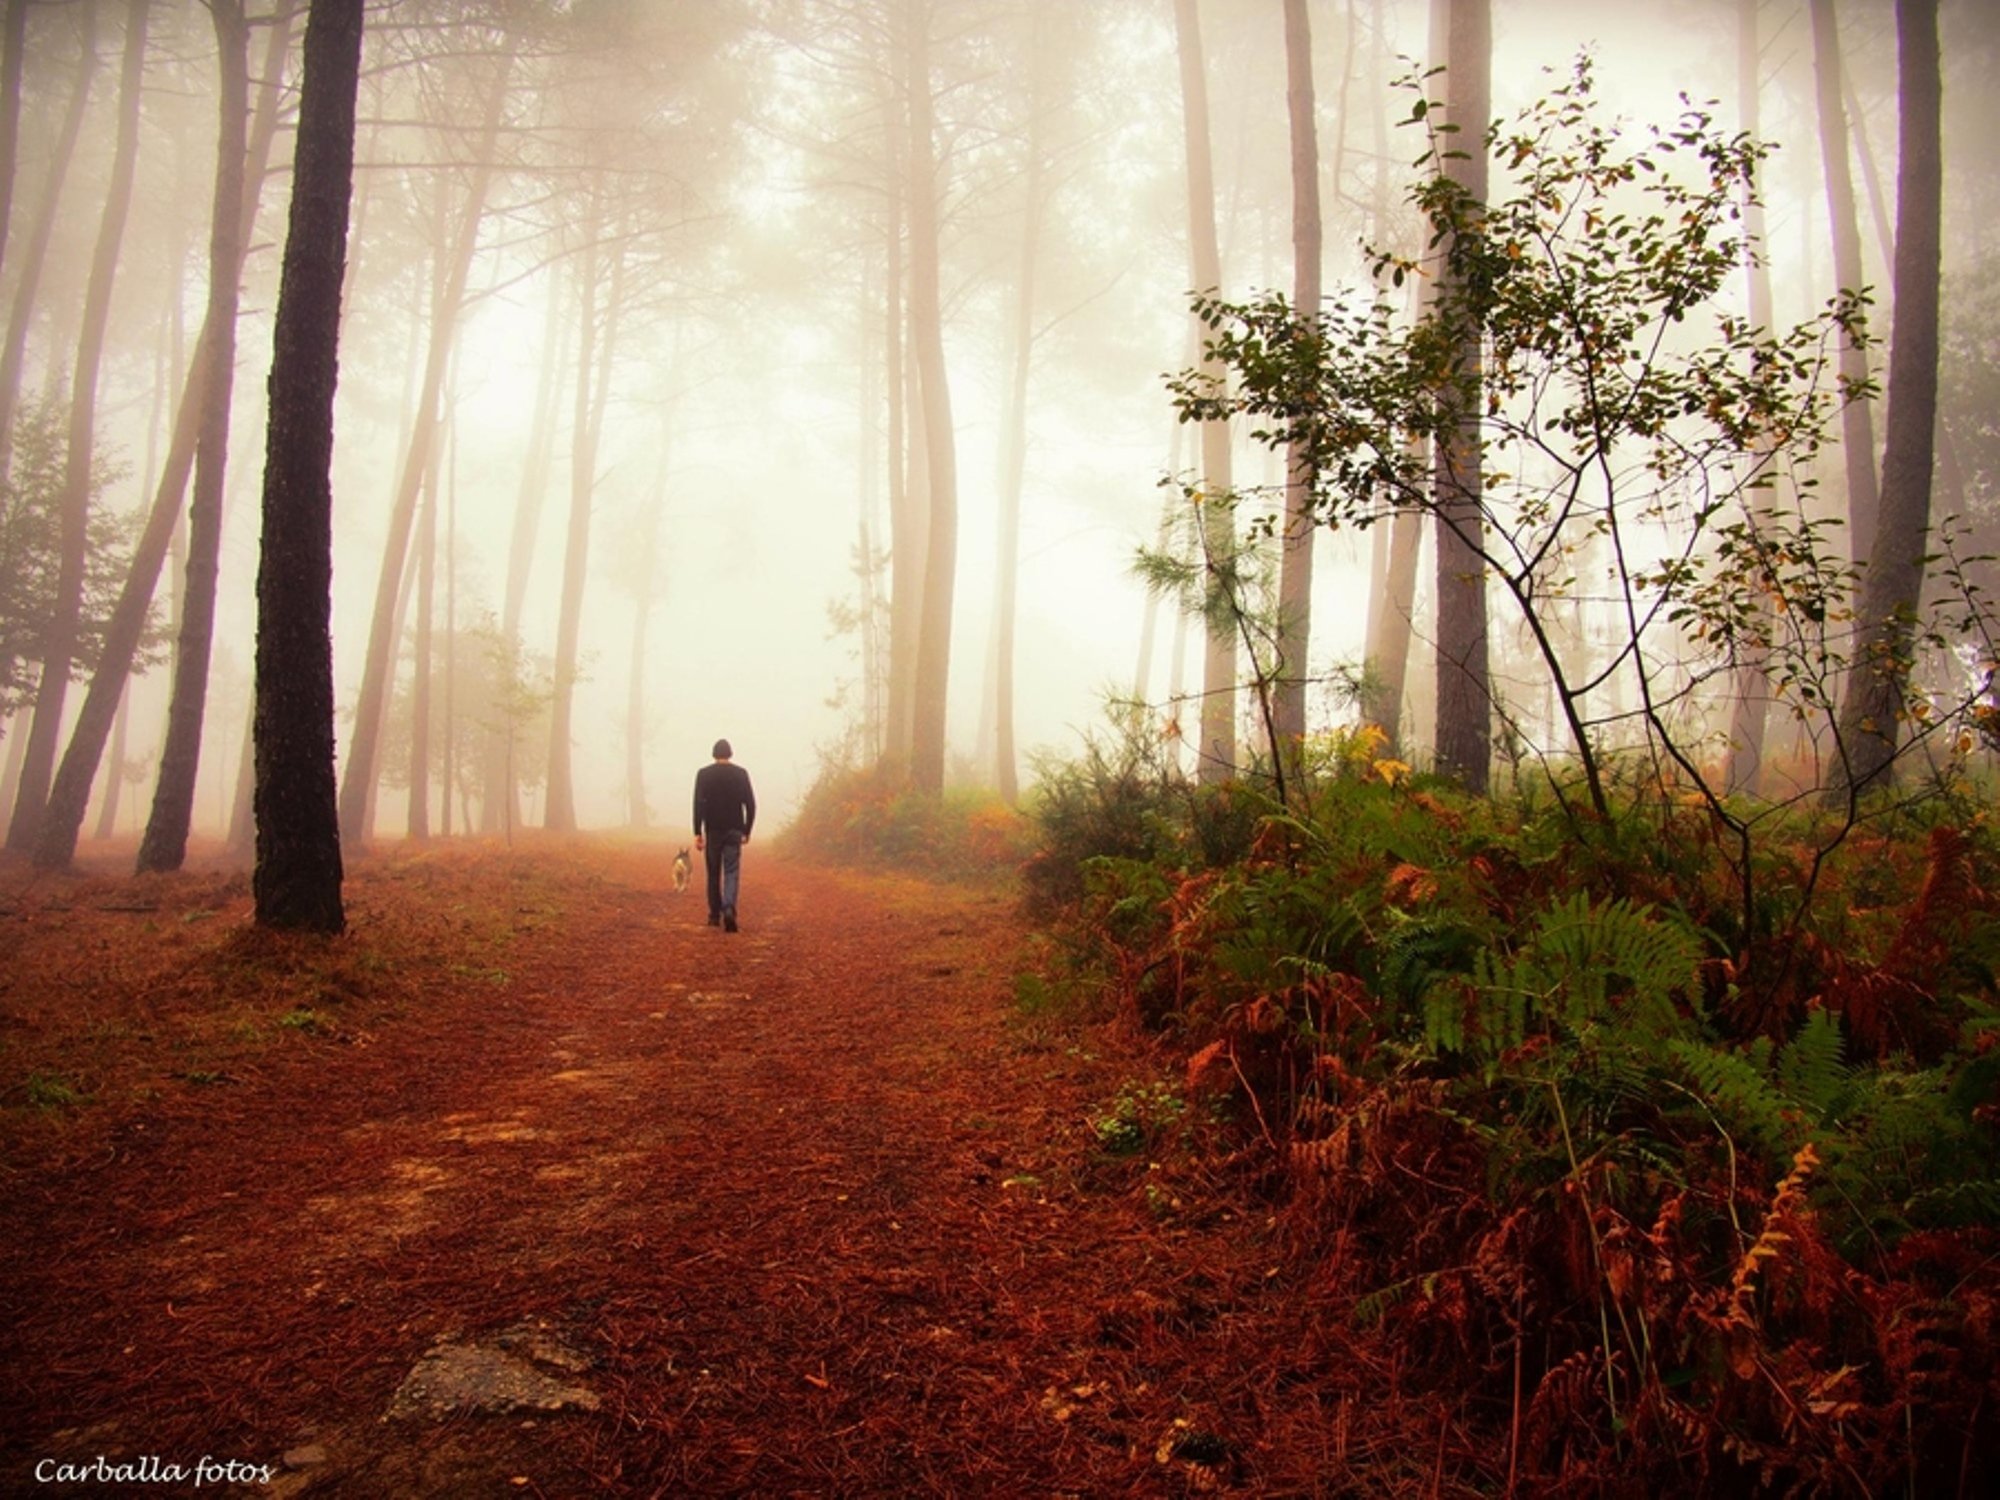 Вдали показался лес. Осень одиночество. Лес в тумане. Человек идет по лесу. Человек в туманном лесу.